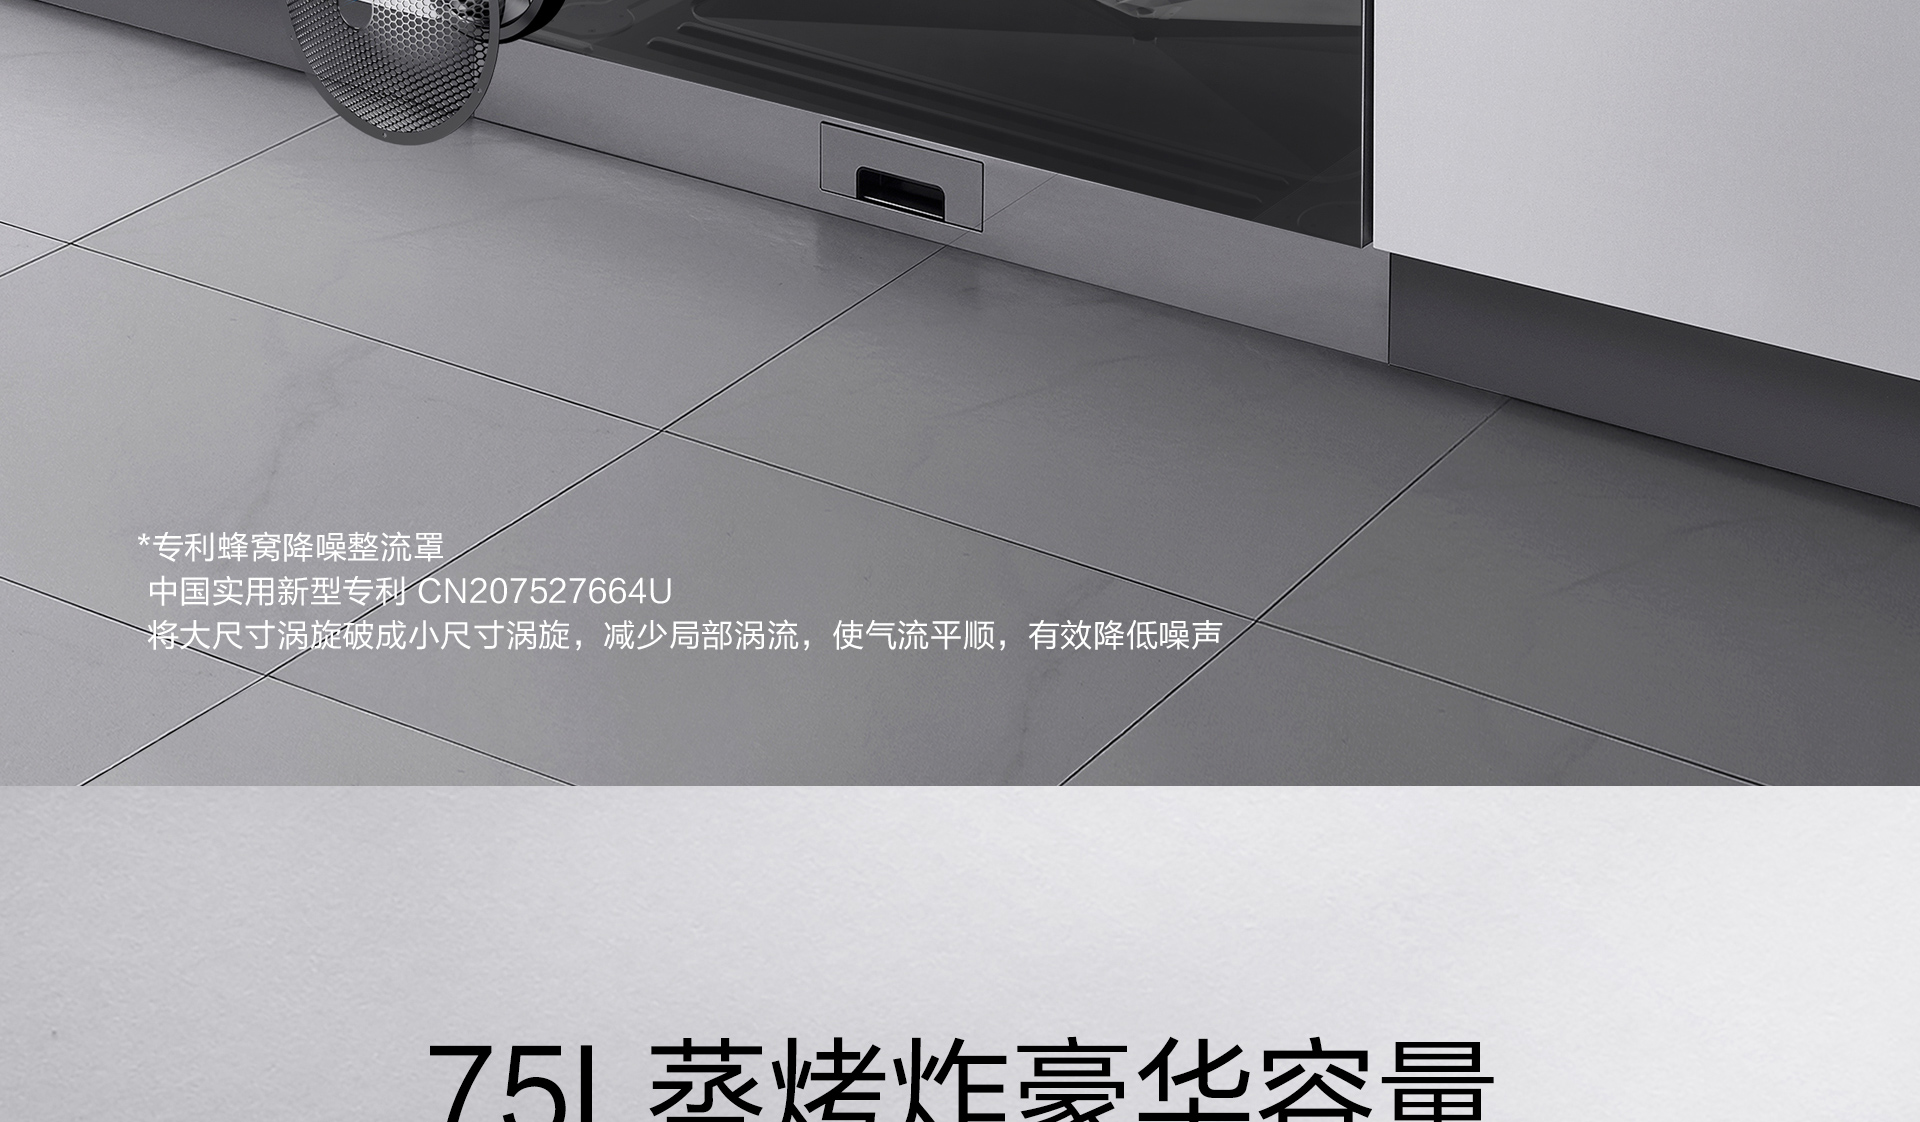 皇冠球网(中国)有限公司产品上新需求单-光焱洗消一体机S1-Plus_04.jpg